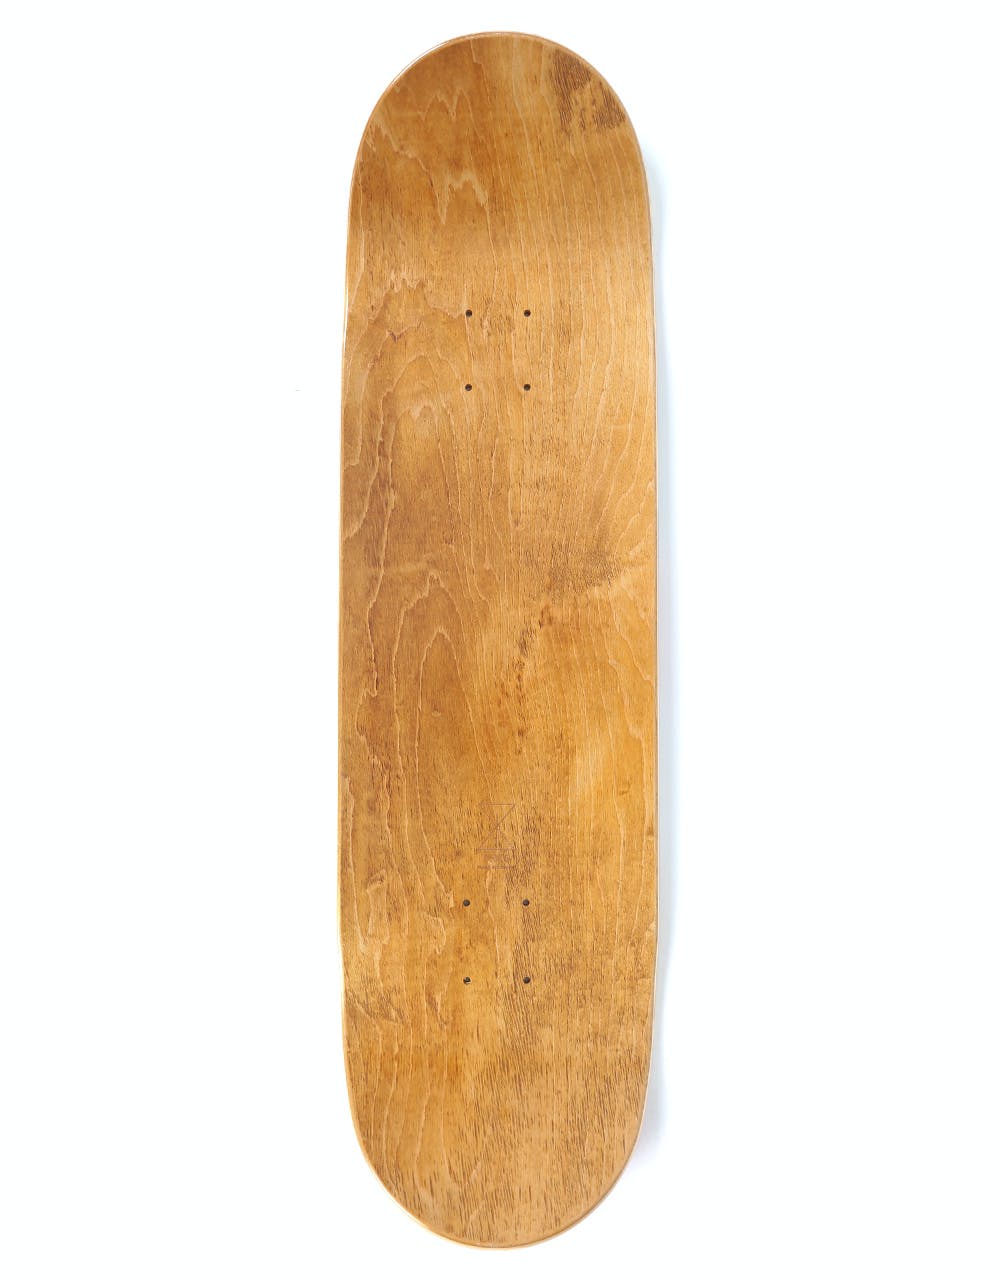 Sour Spray Skateboard Deck - 8.75"